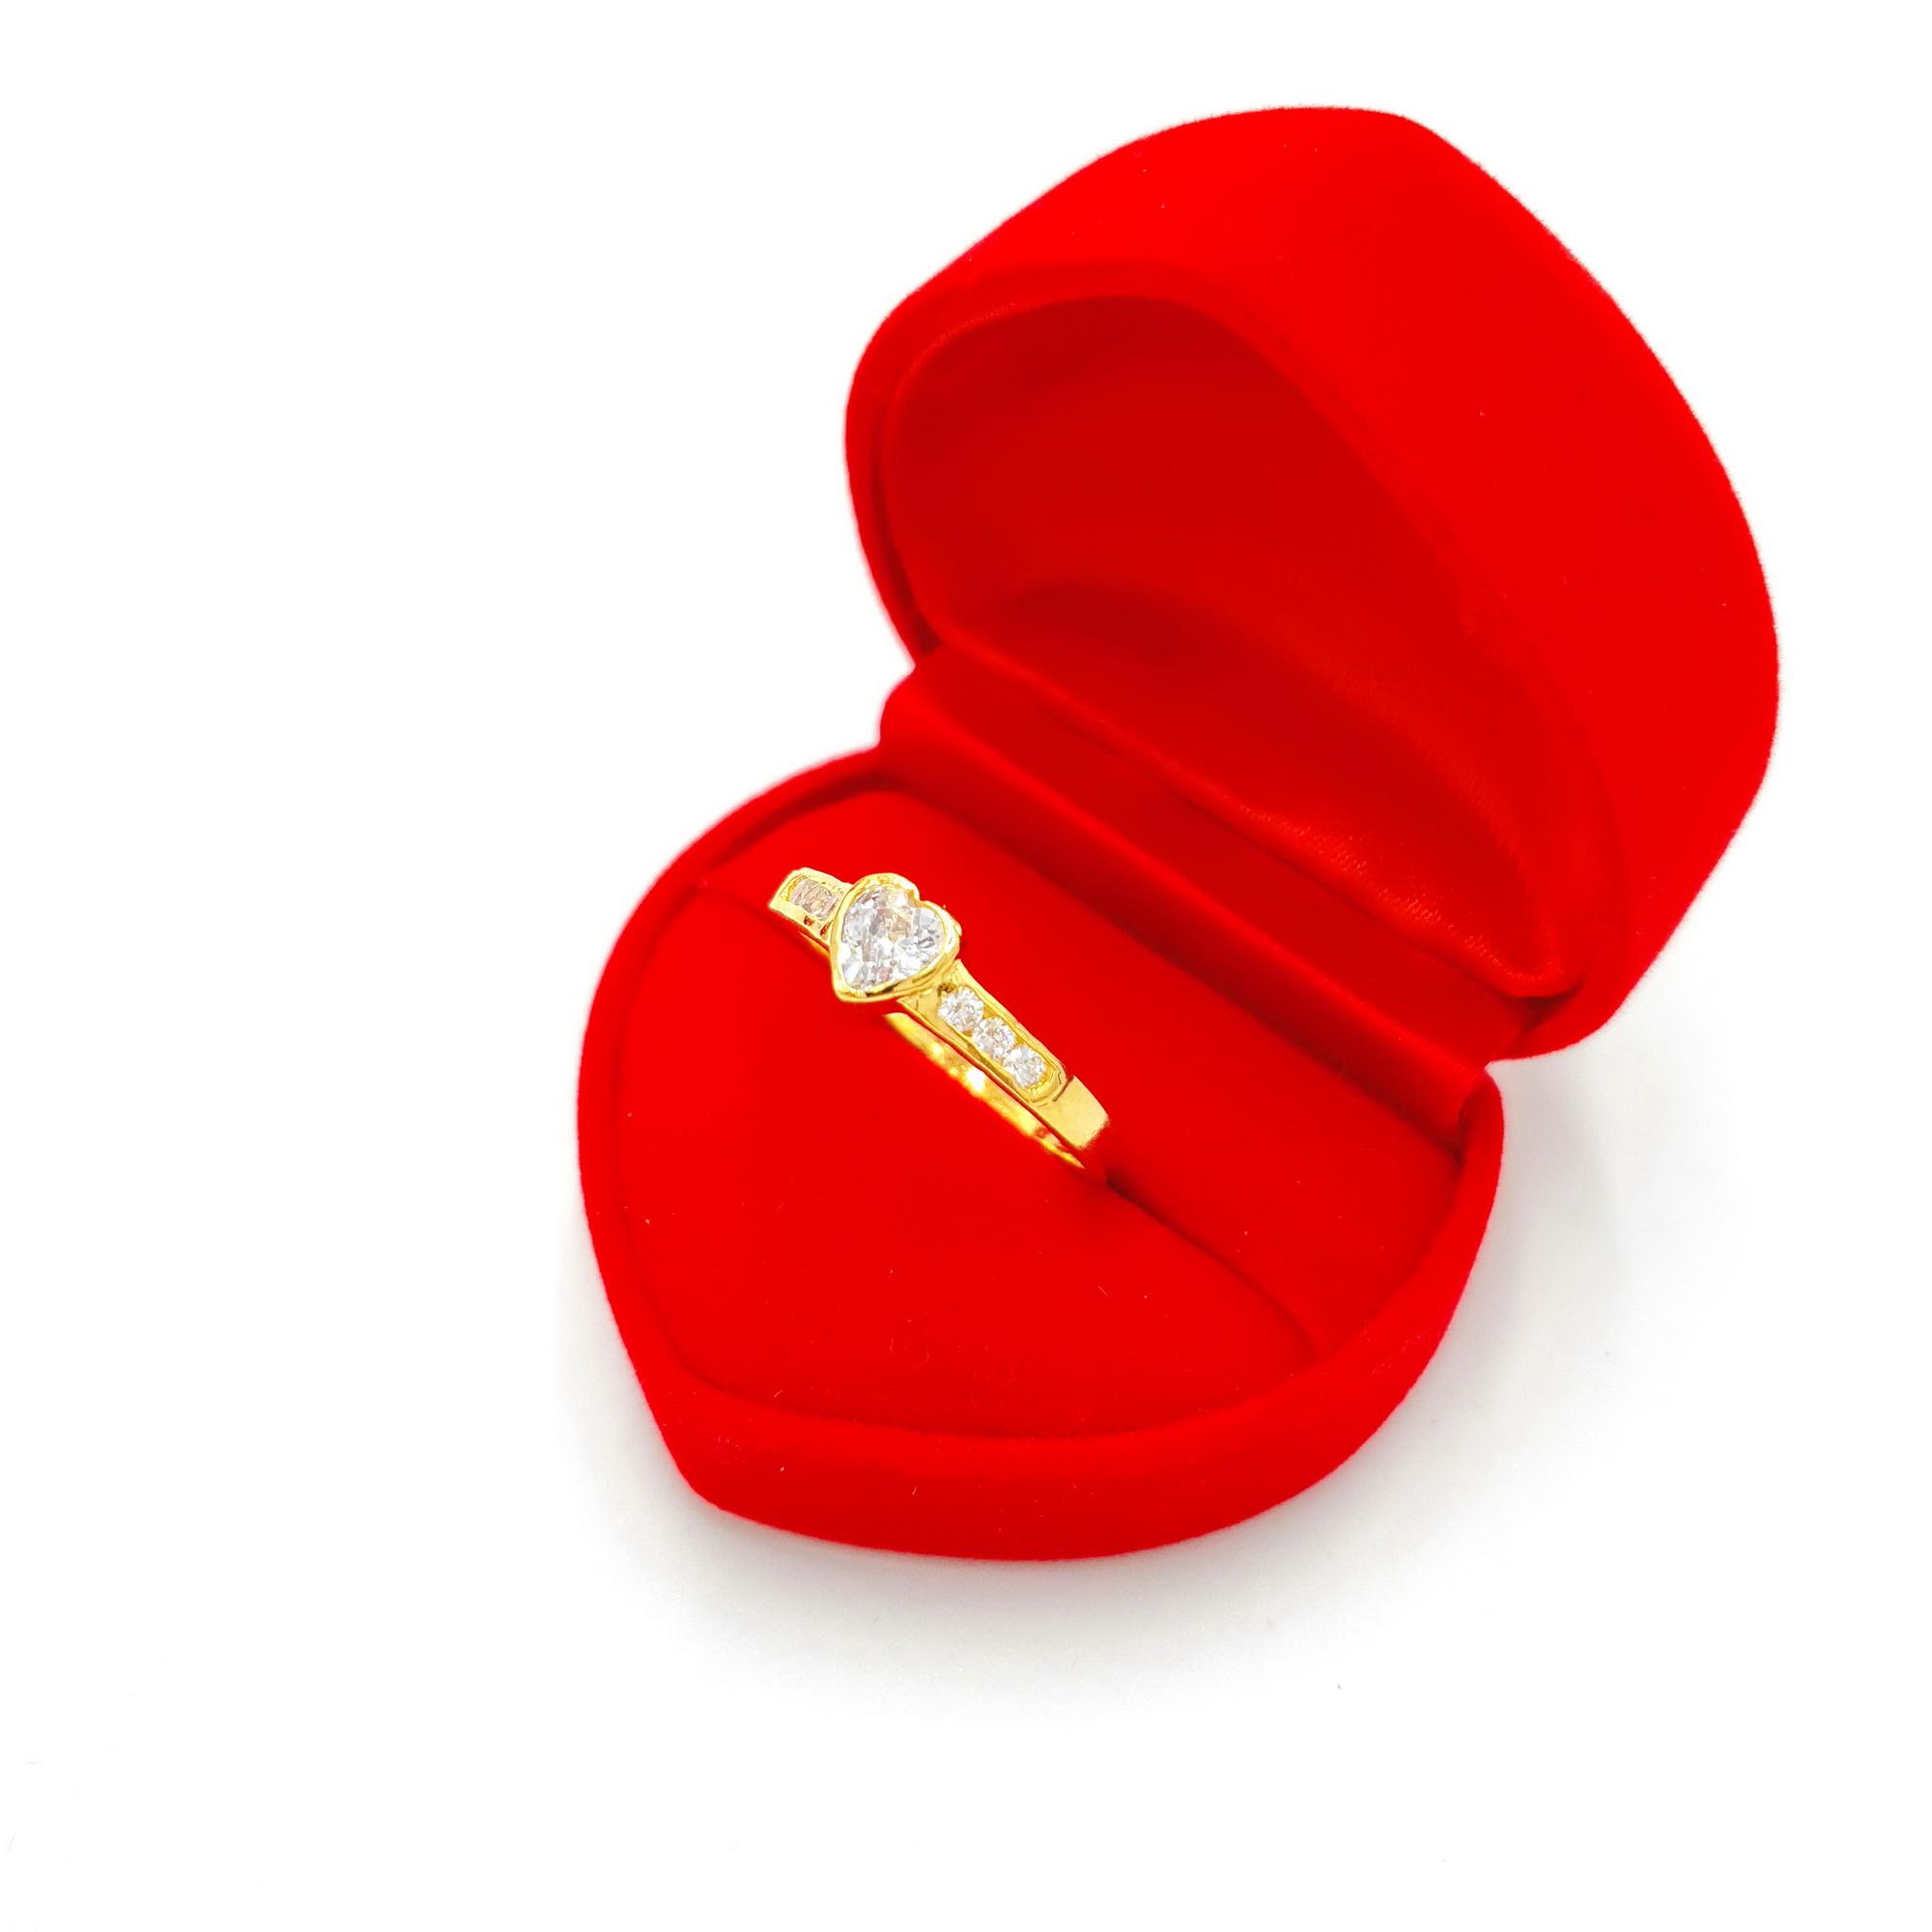 เเหวนทอง ประดับเพชรCZ 18K รูปหัวใจ เเหวนชุบไมครอน เเหวนหมั้น เเหวนเเต่งงาน เครื่องประดับผู้หญิง